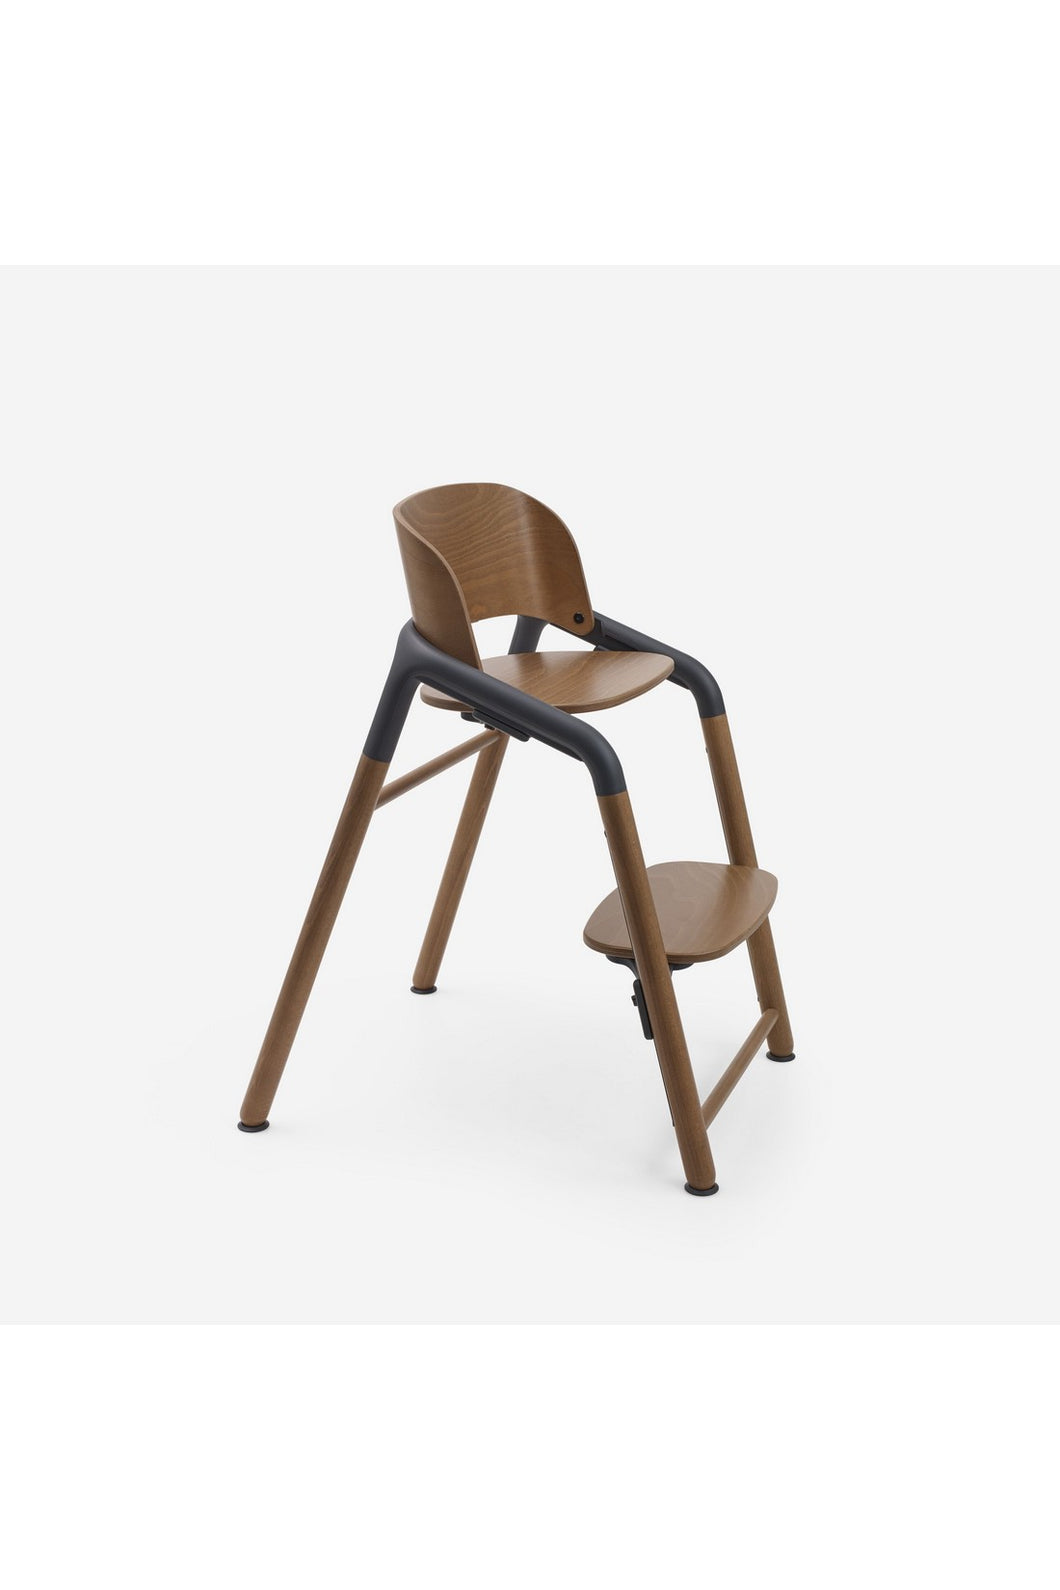 Bugaboo Giraffe Chair - Warm Wood / Grey